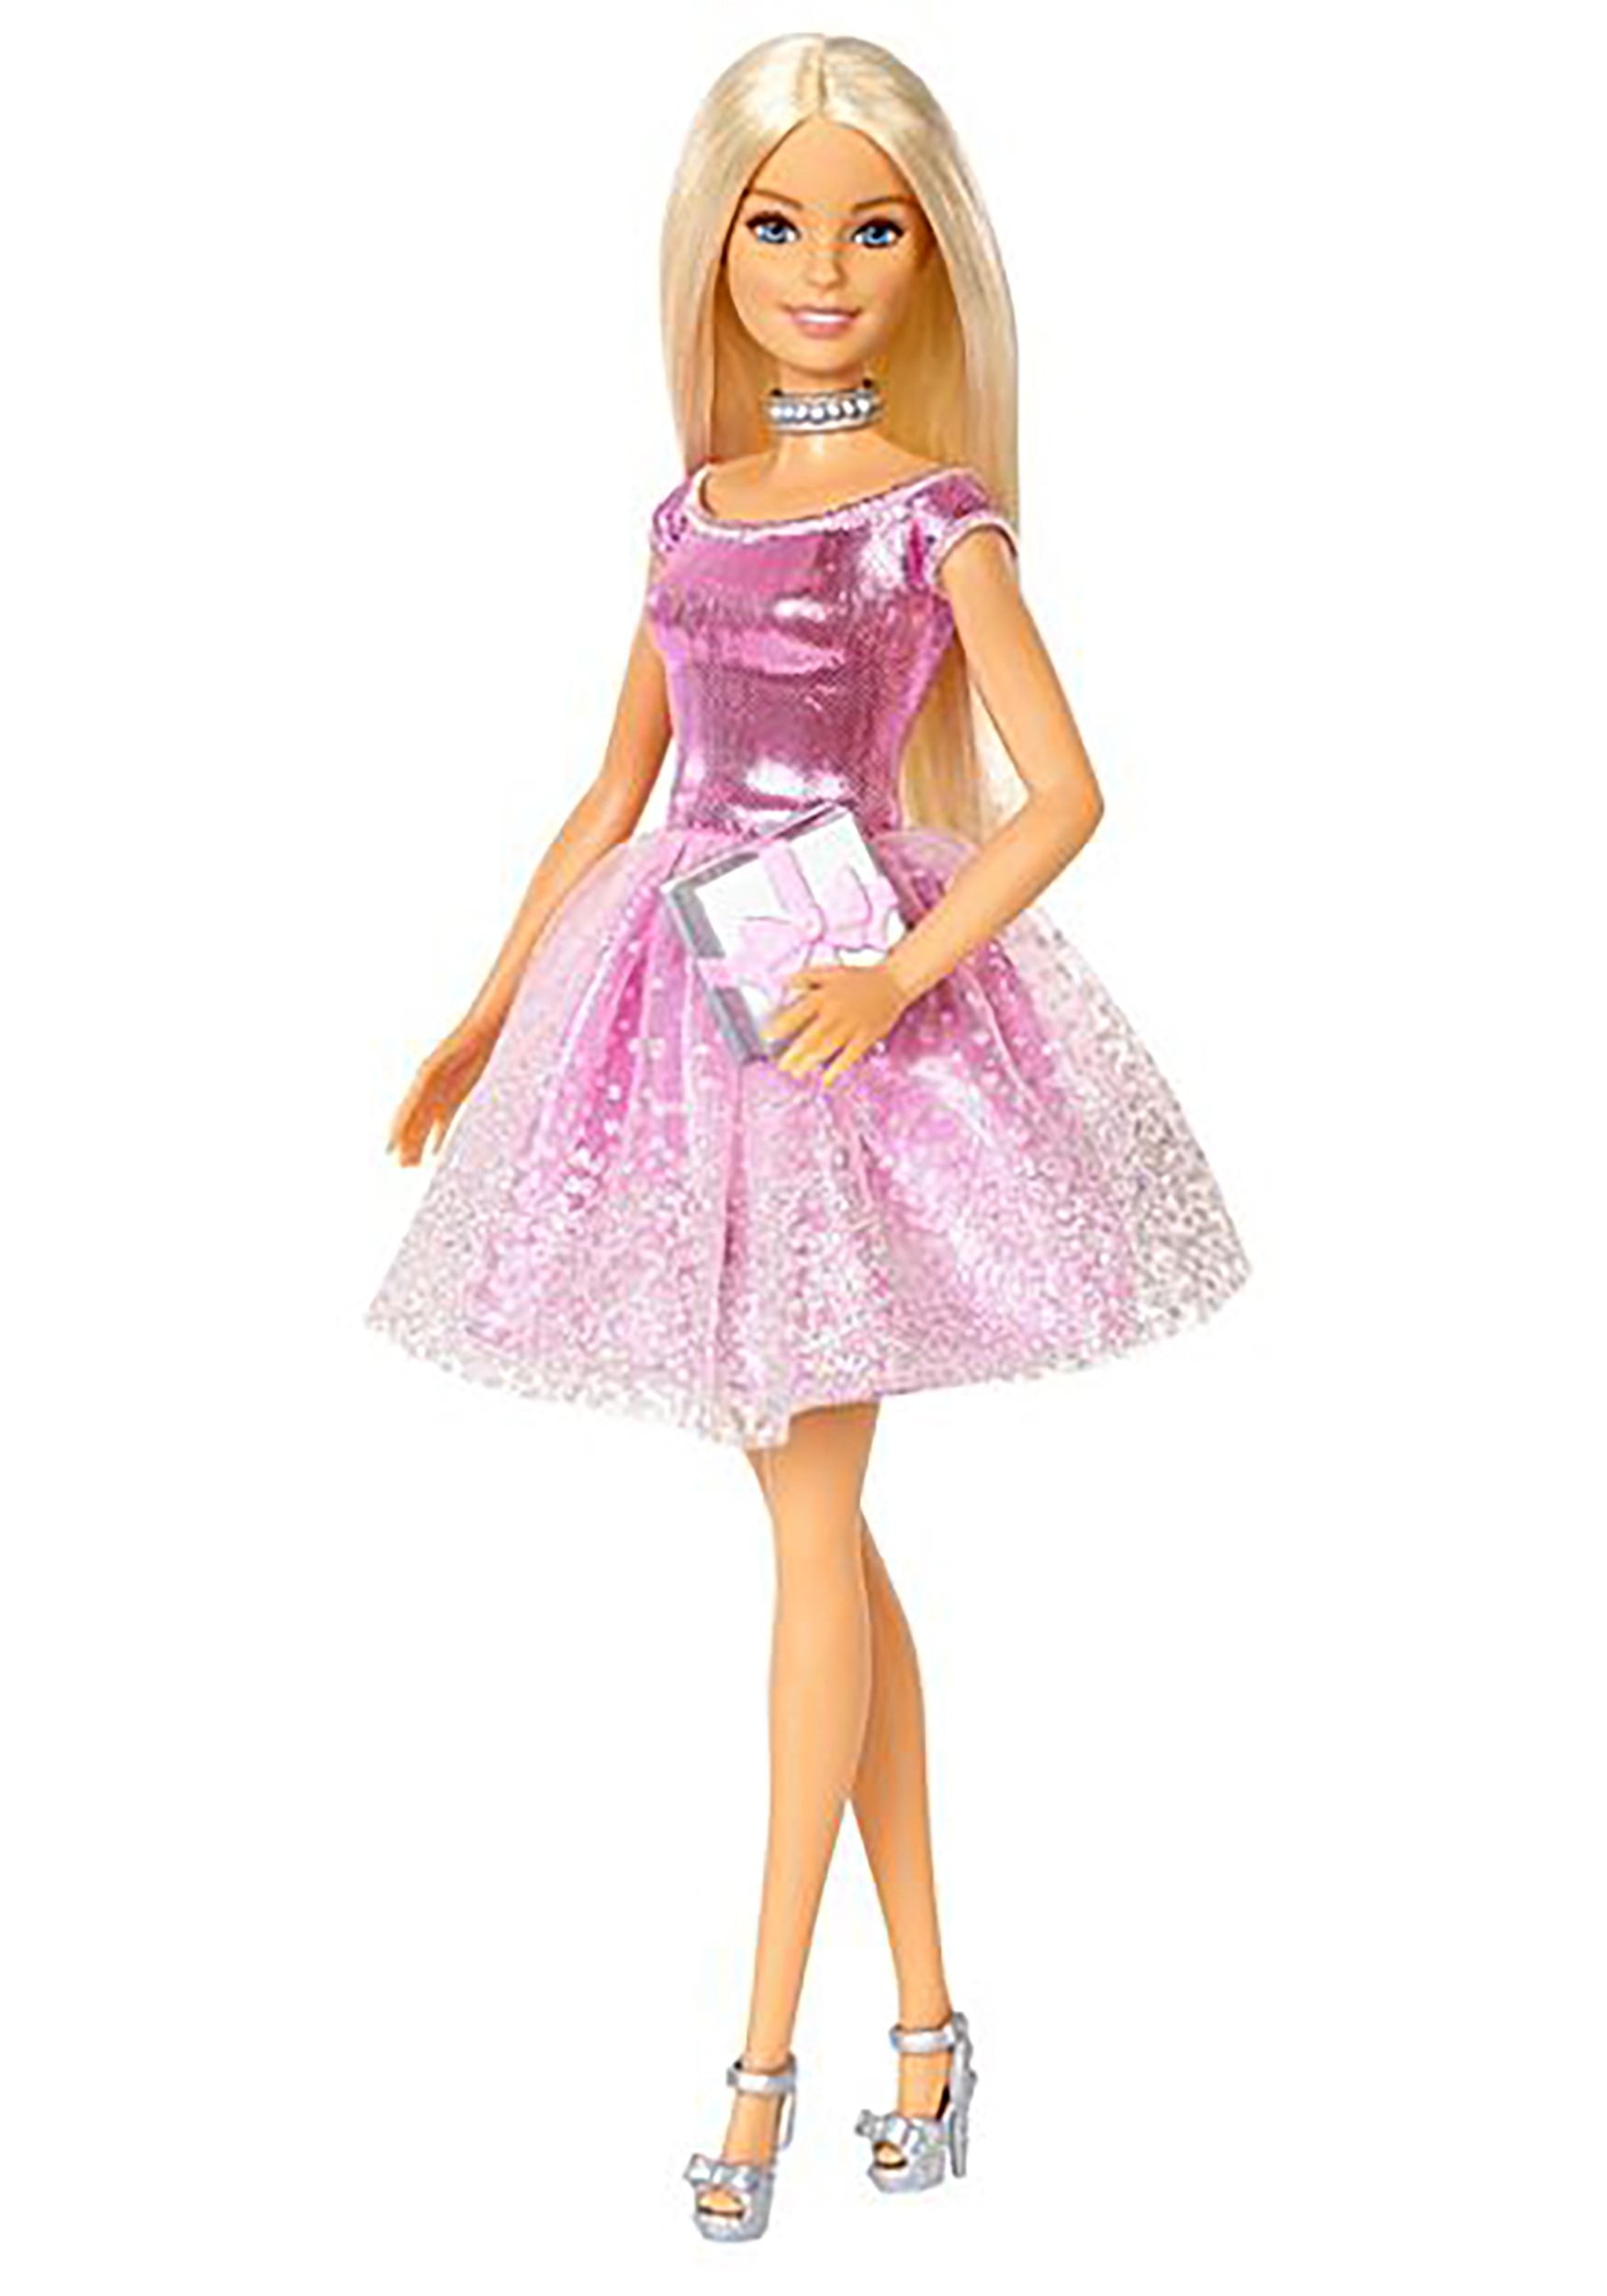 Seletøj desinficere Bevæger sig ikke Happy Birthday Barbie Doll - Walmart.com